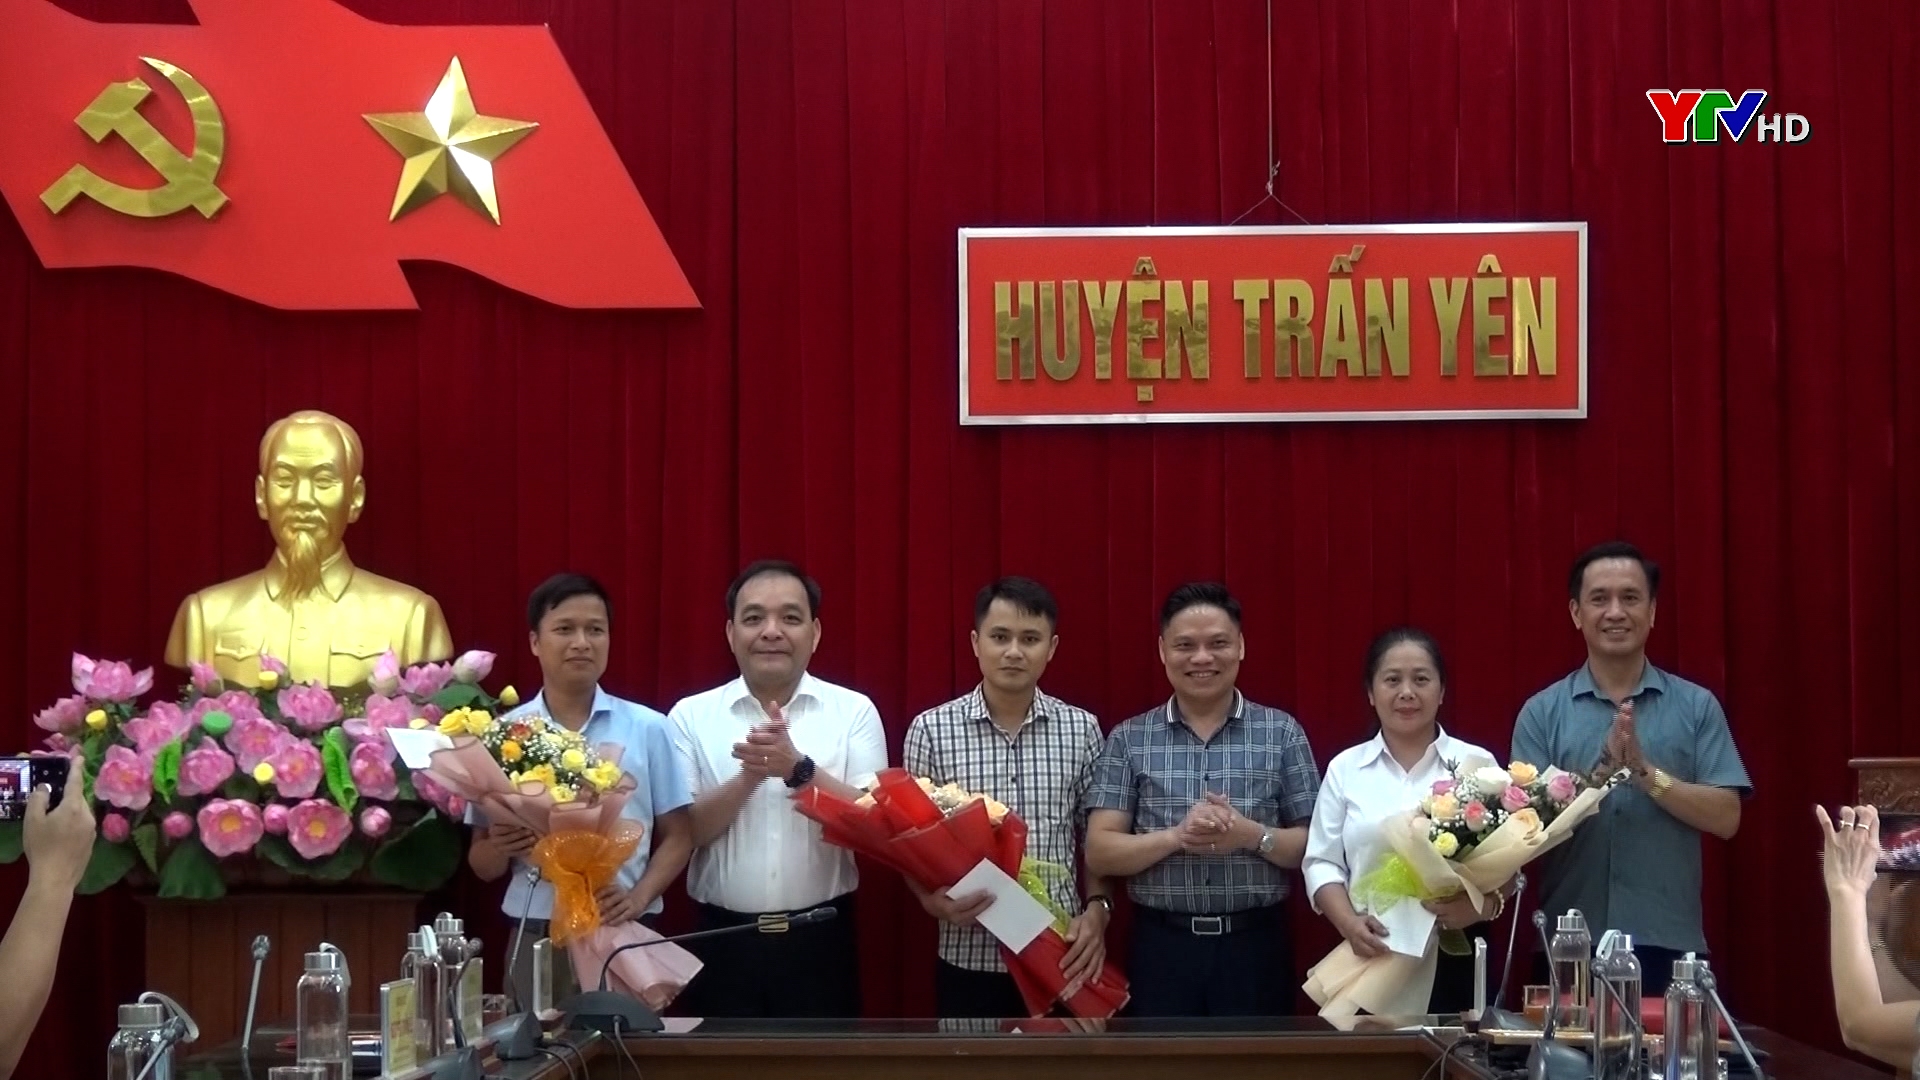 Thị xã Nghĩa Lộ và huyện Trấn Yên gặp mặt giáo viên tiếng Anh được biệt phái hỗ trợ giảng dạy tại huyện Trạm Tấu